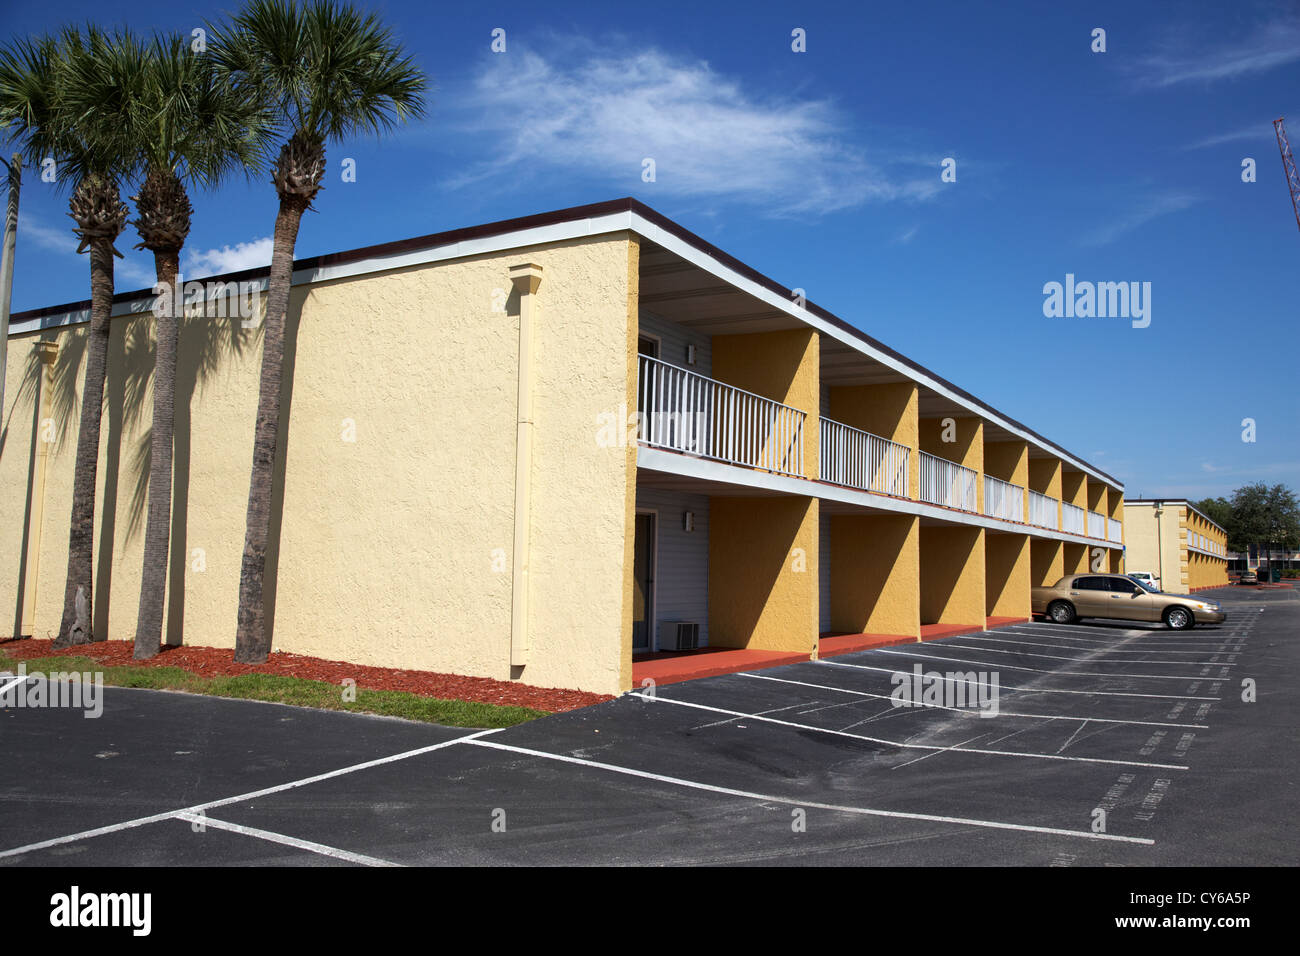 Per la maggior parte vuota a buon mercato budget motel in Kissimmee florida usa Foto Stock